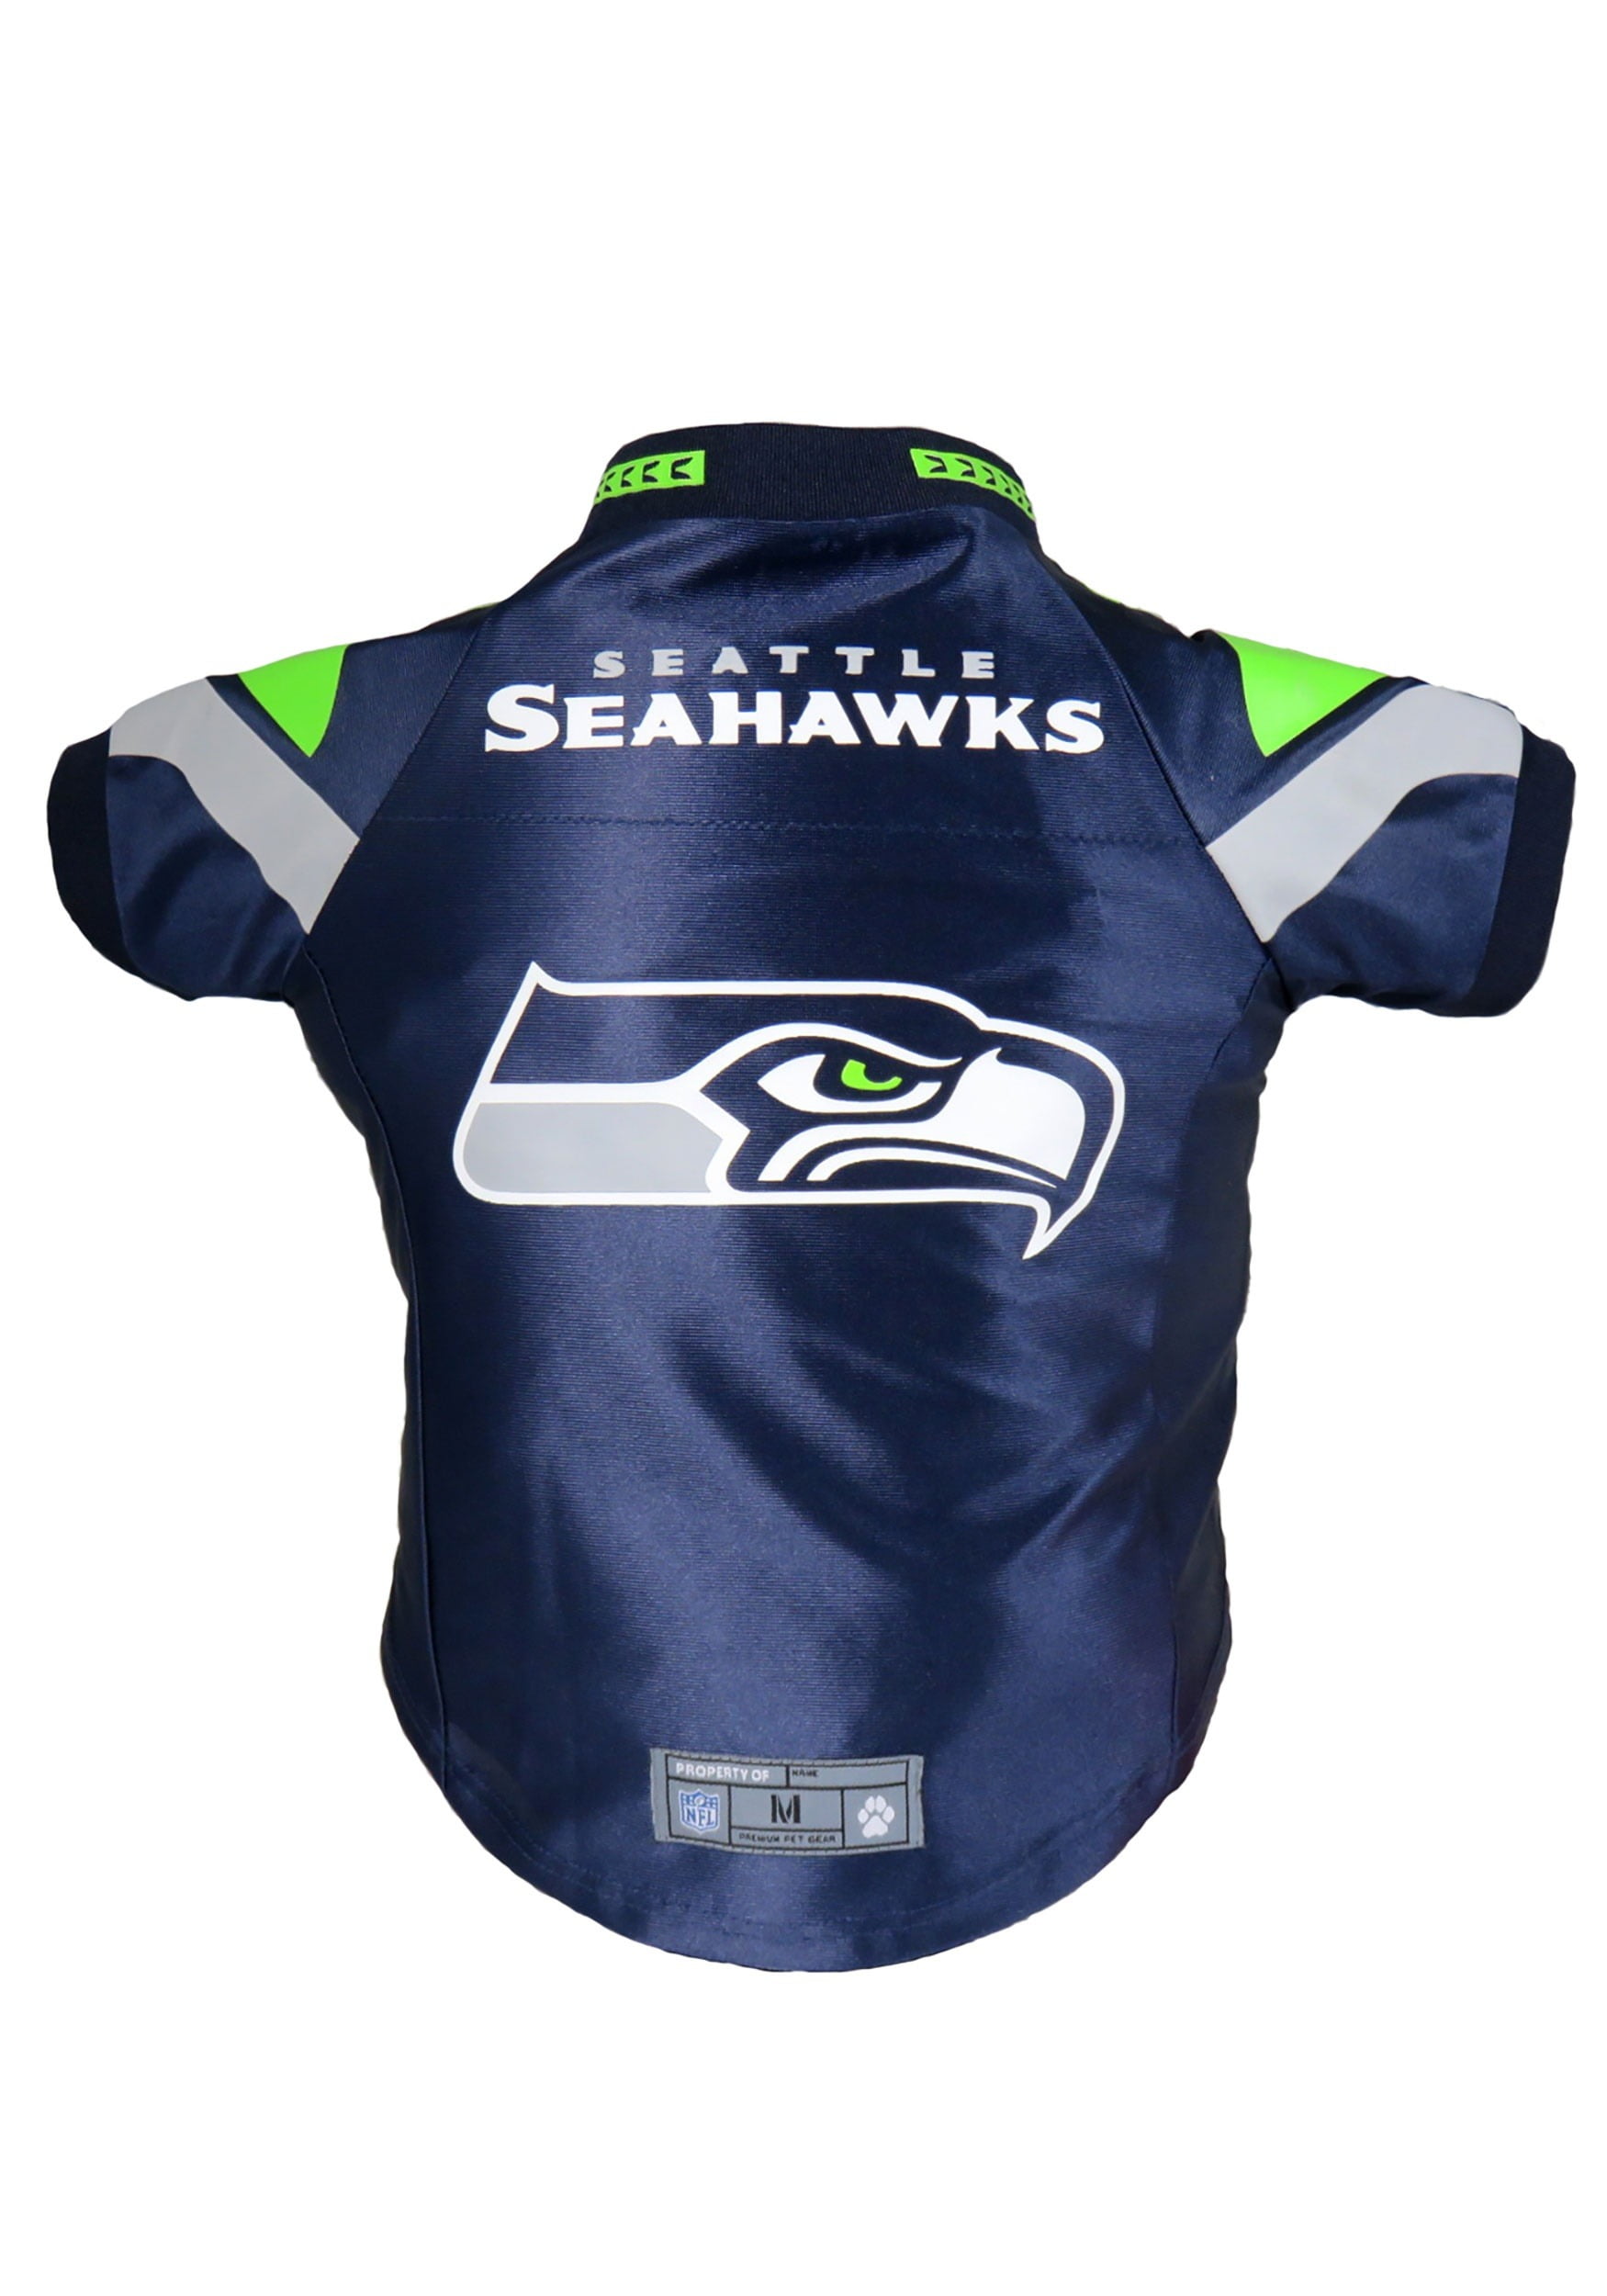 buy seattle seahawks jersey